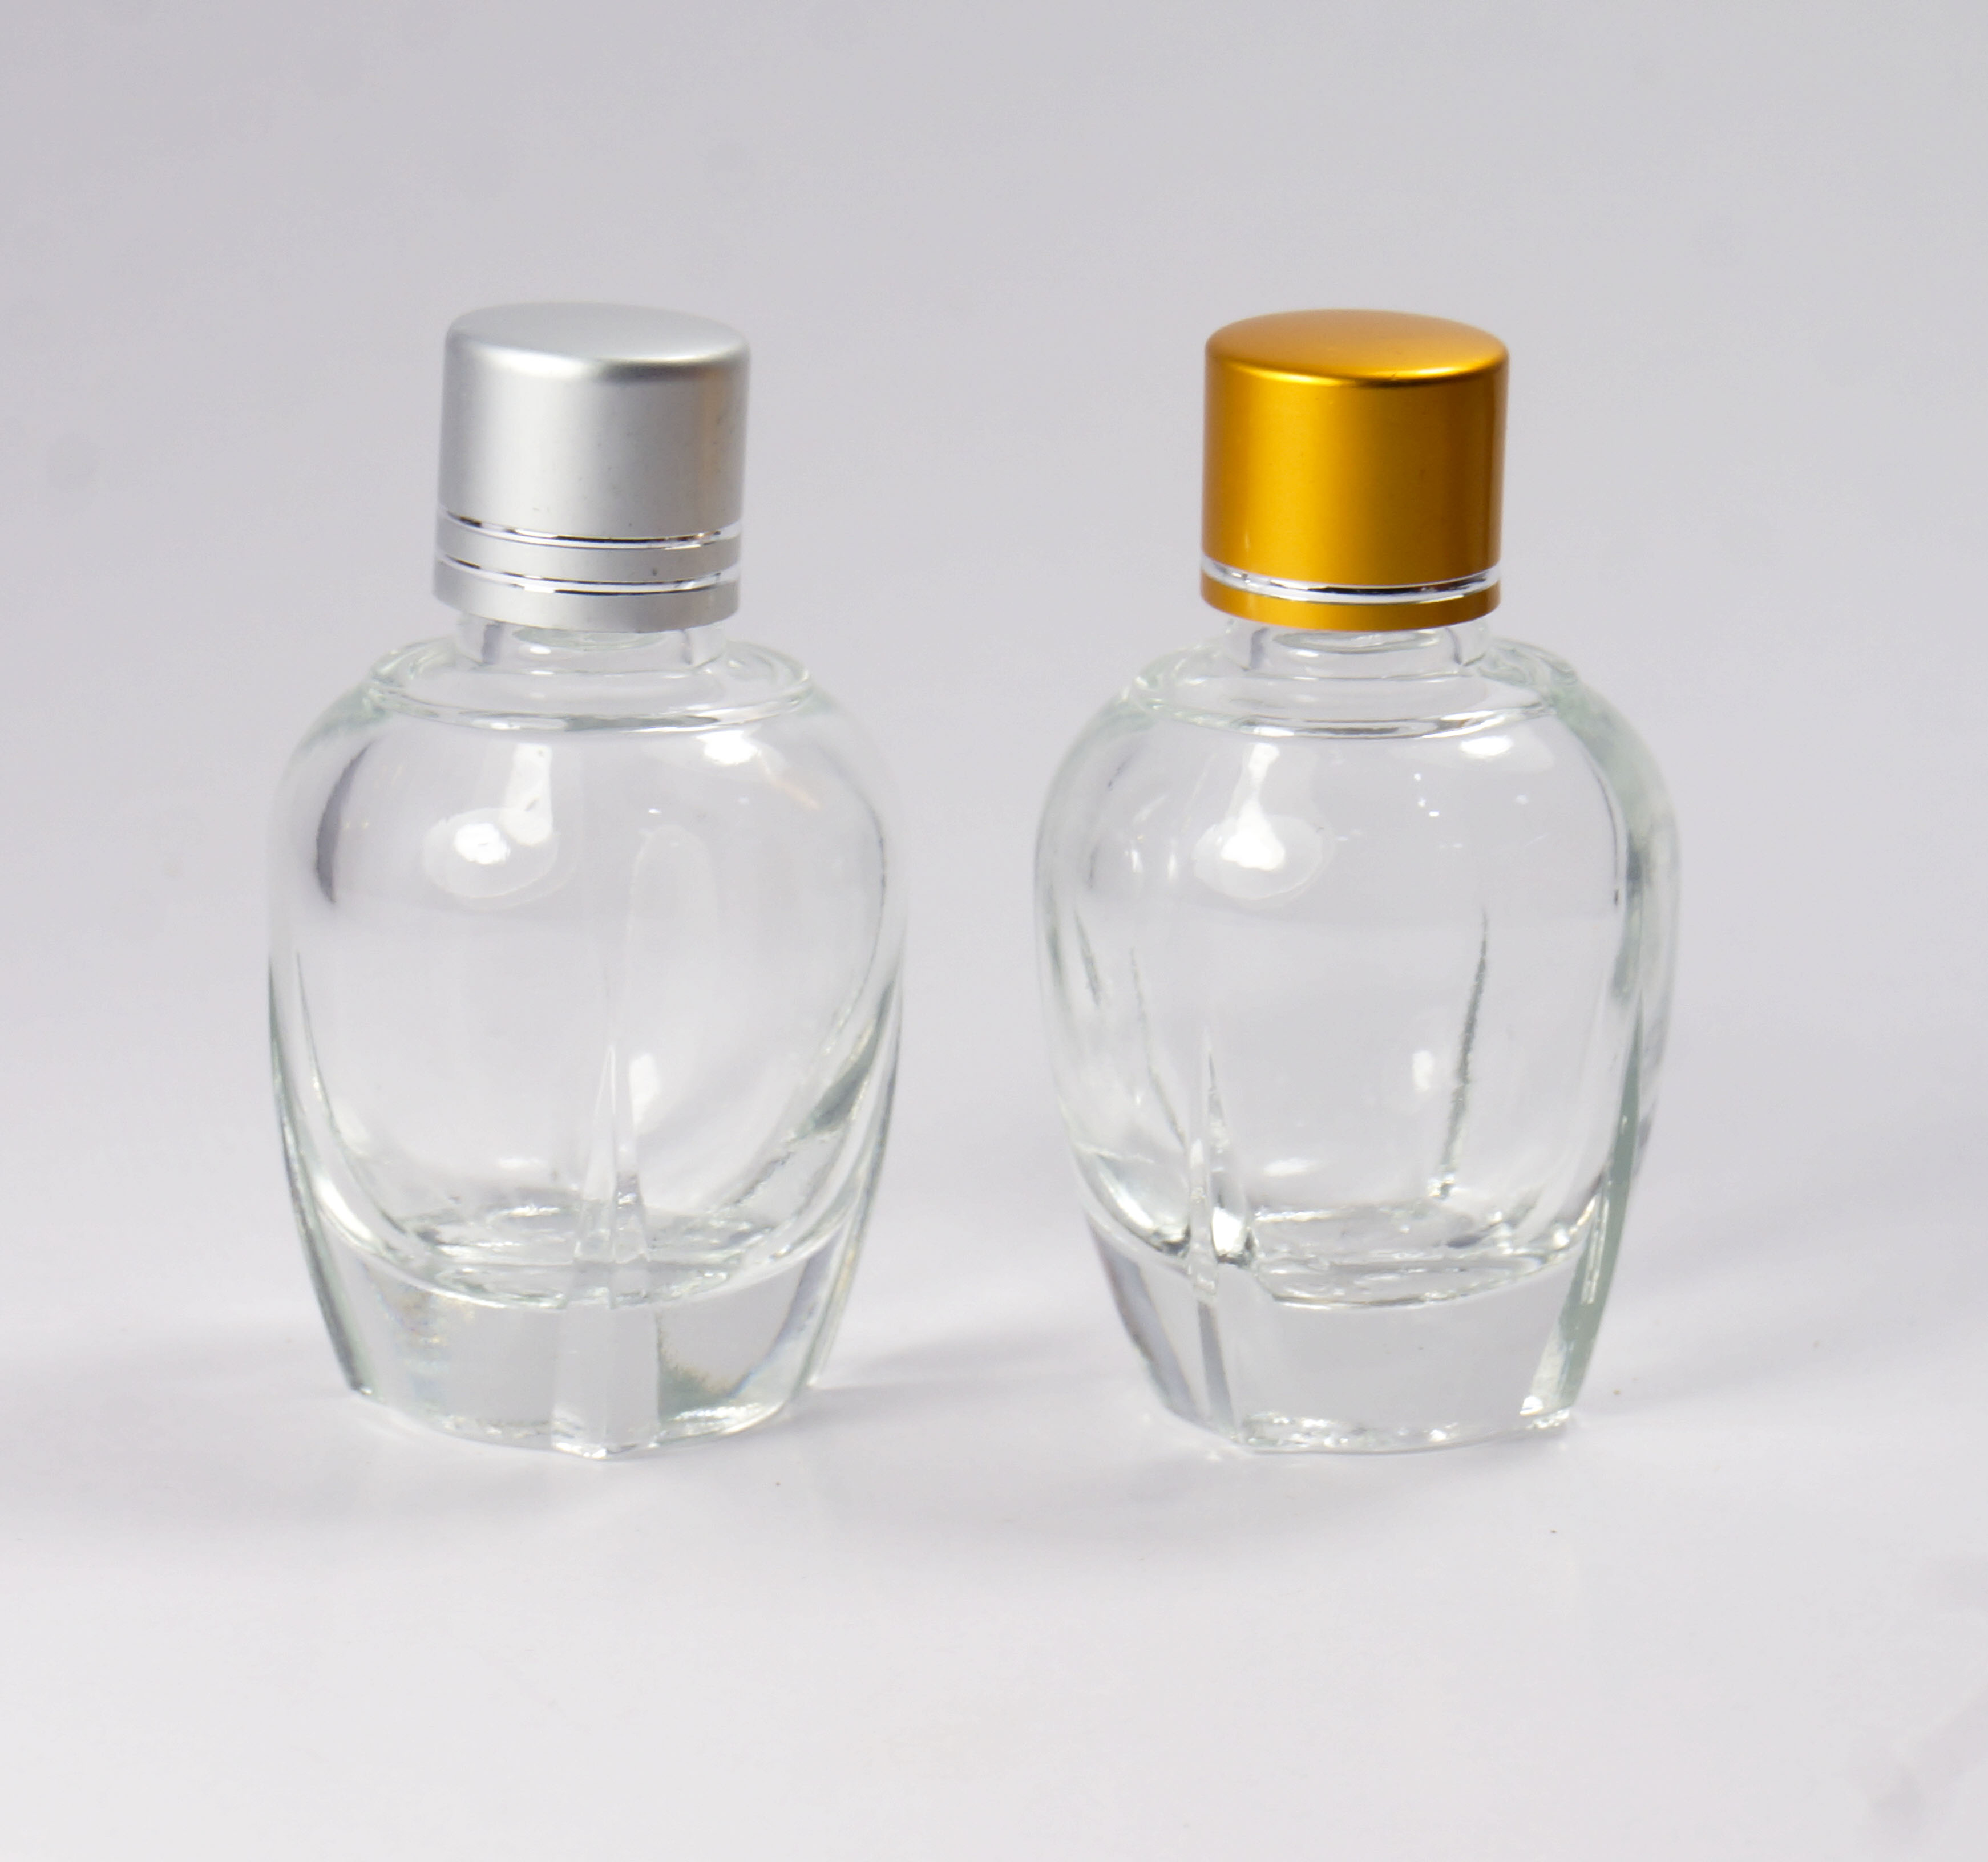 广州市批发订做多款式香水瓶厂家供应批发订做多款式香水瓶 精品香水瓶 玻璃香水瓶